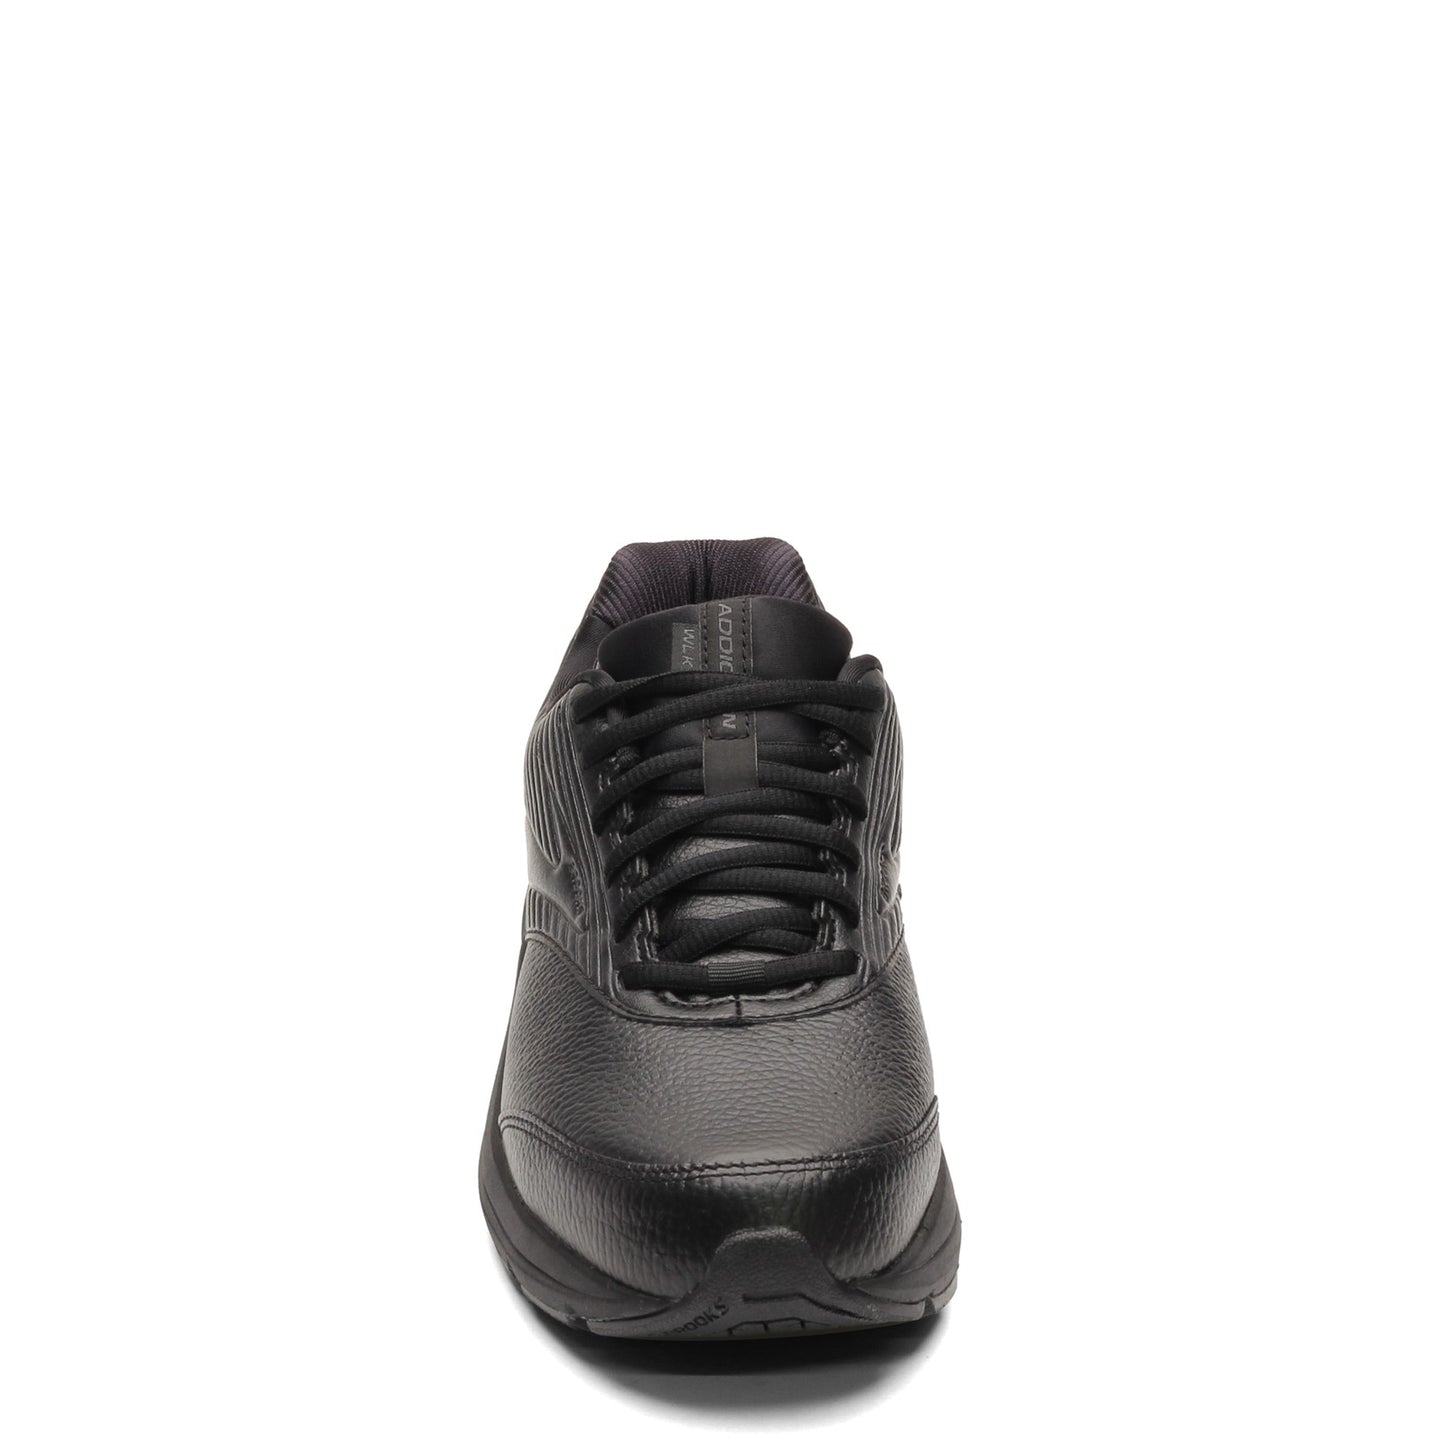 Peltz Shoes  Men's Brooks Addiction Walker 2 Walking Shoe Black/Black 110318 1D 072